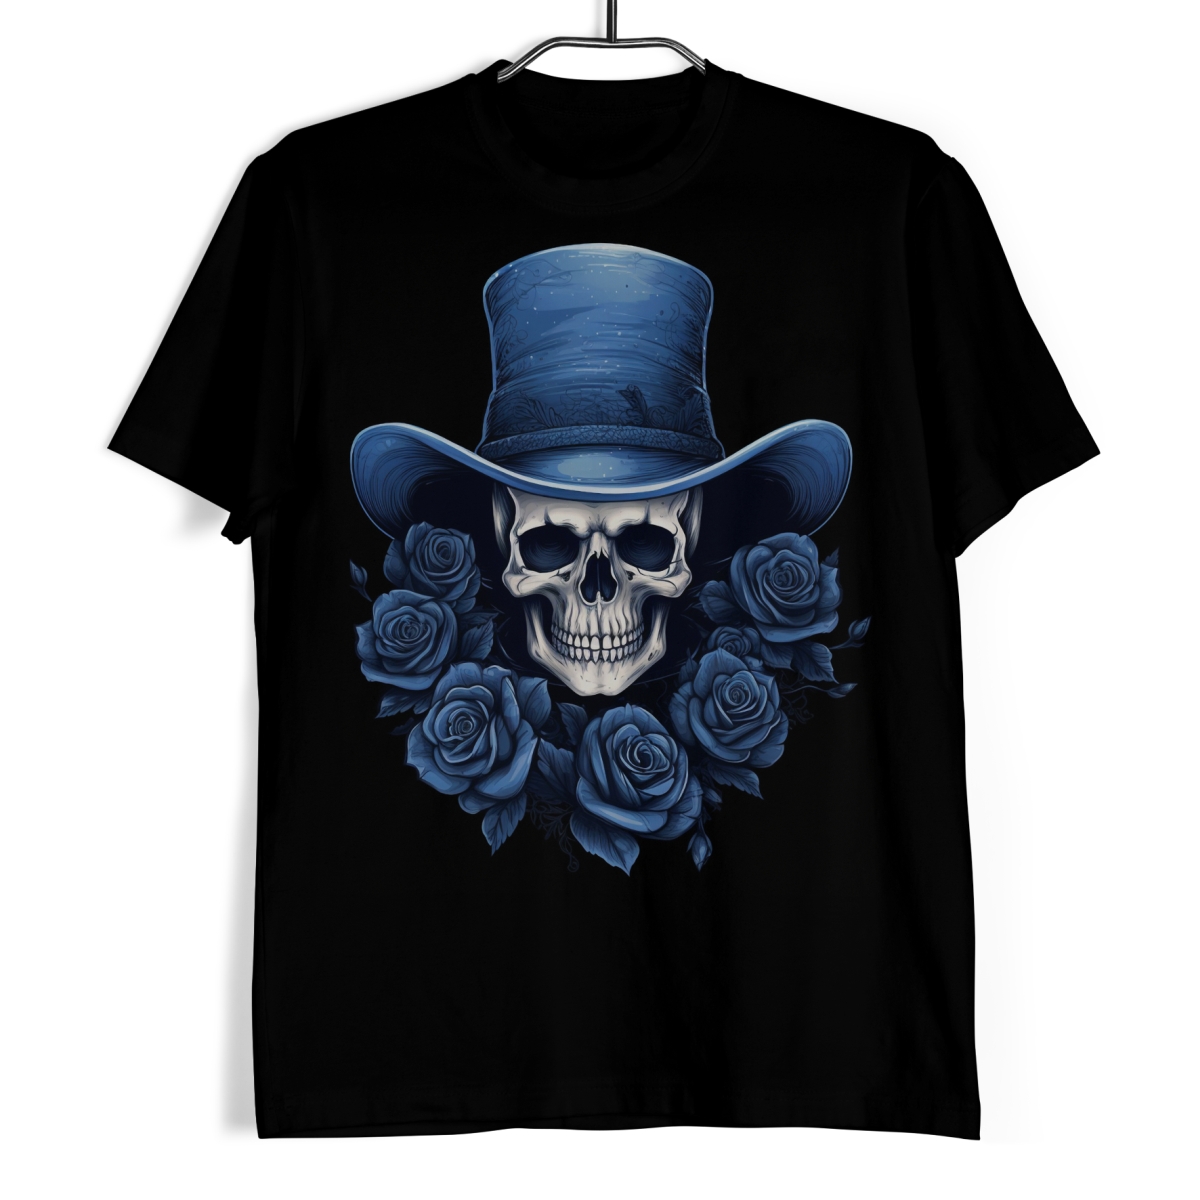 Tričko s lebkou - Modrý cylindr a růže XL